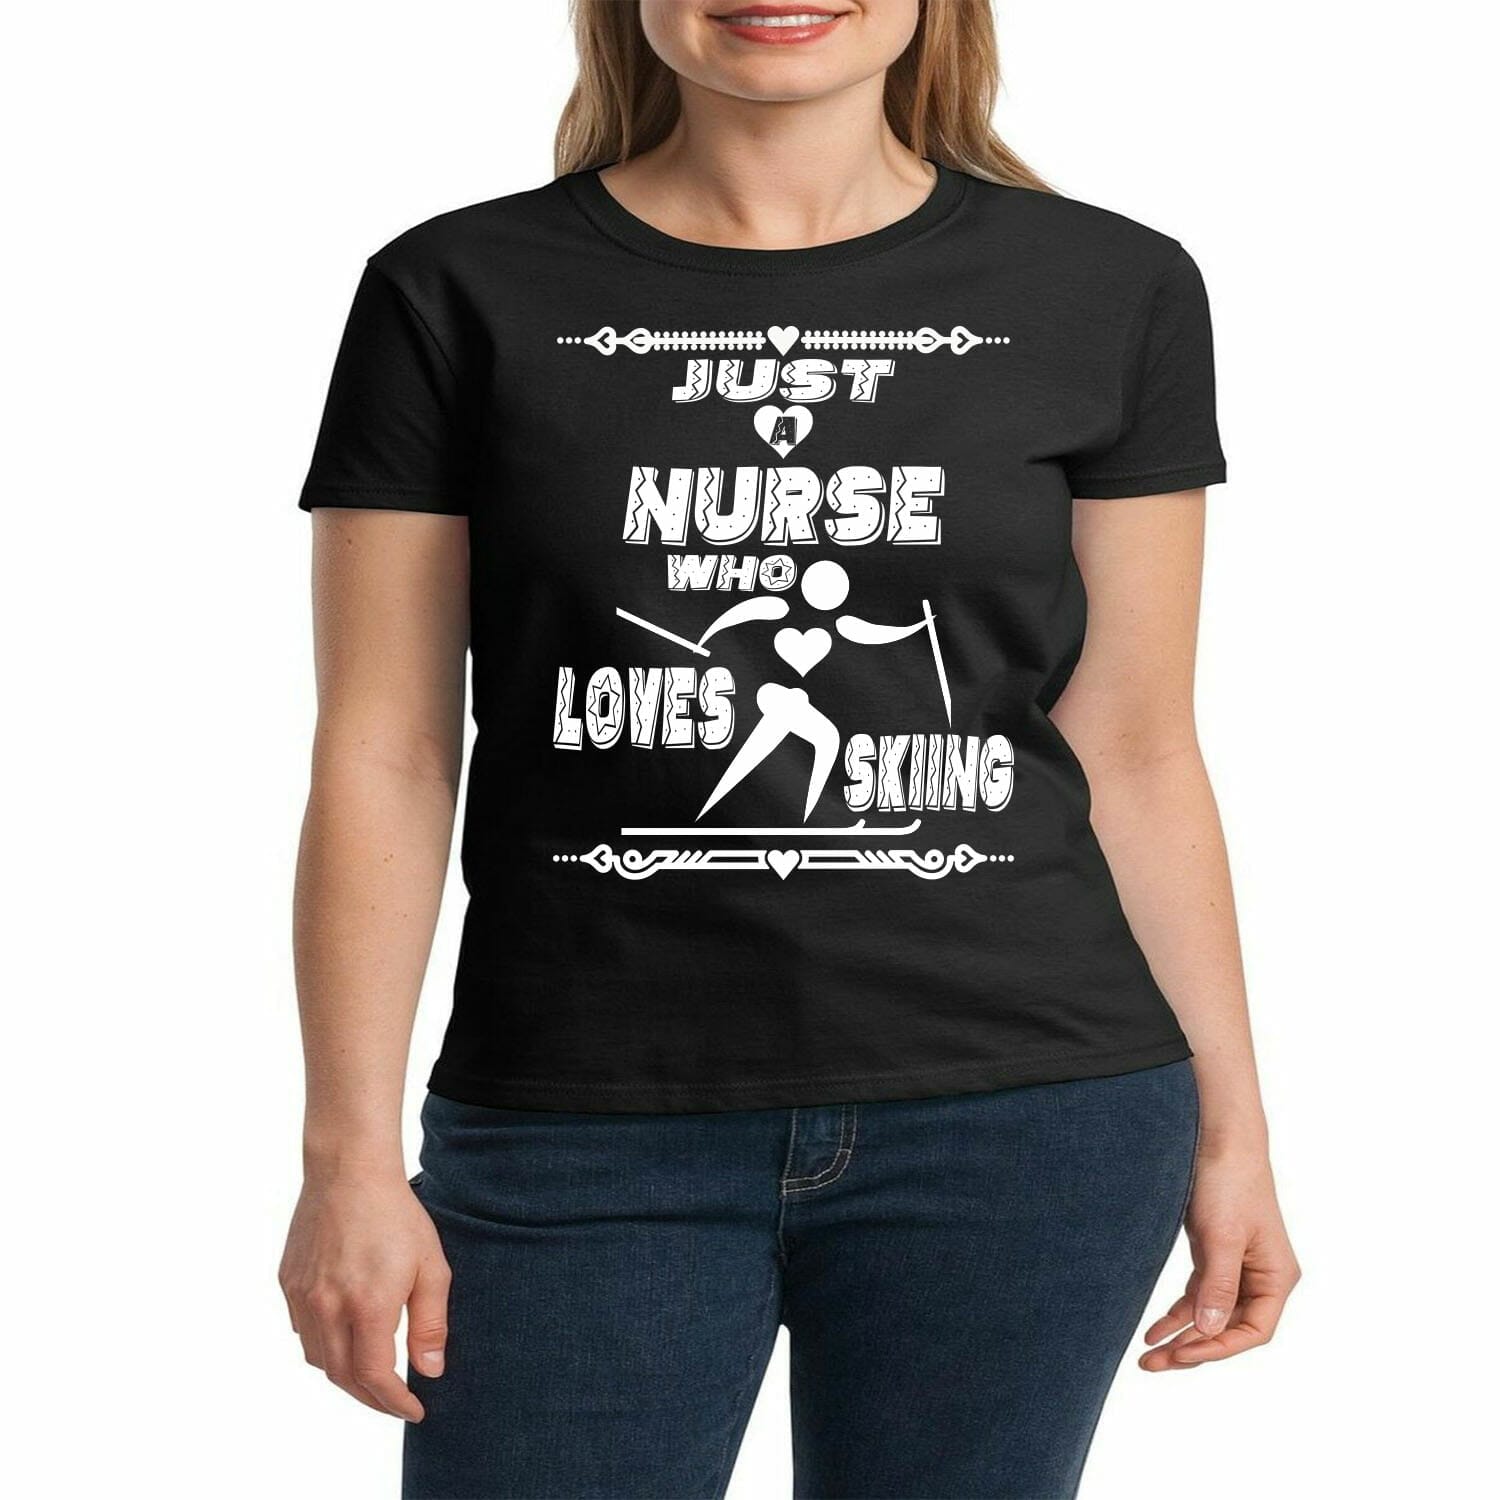 nurse who loves skiing tshirt